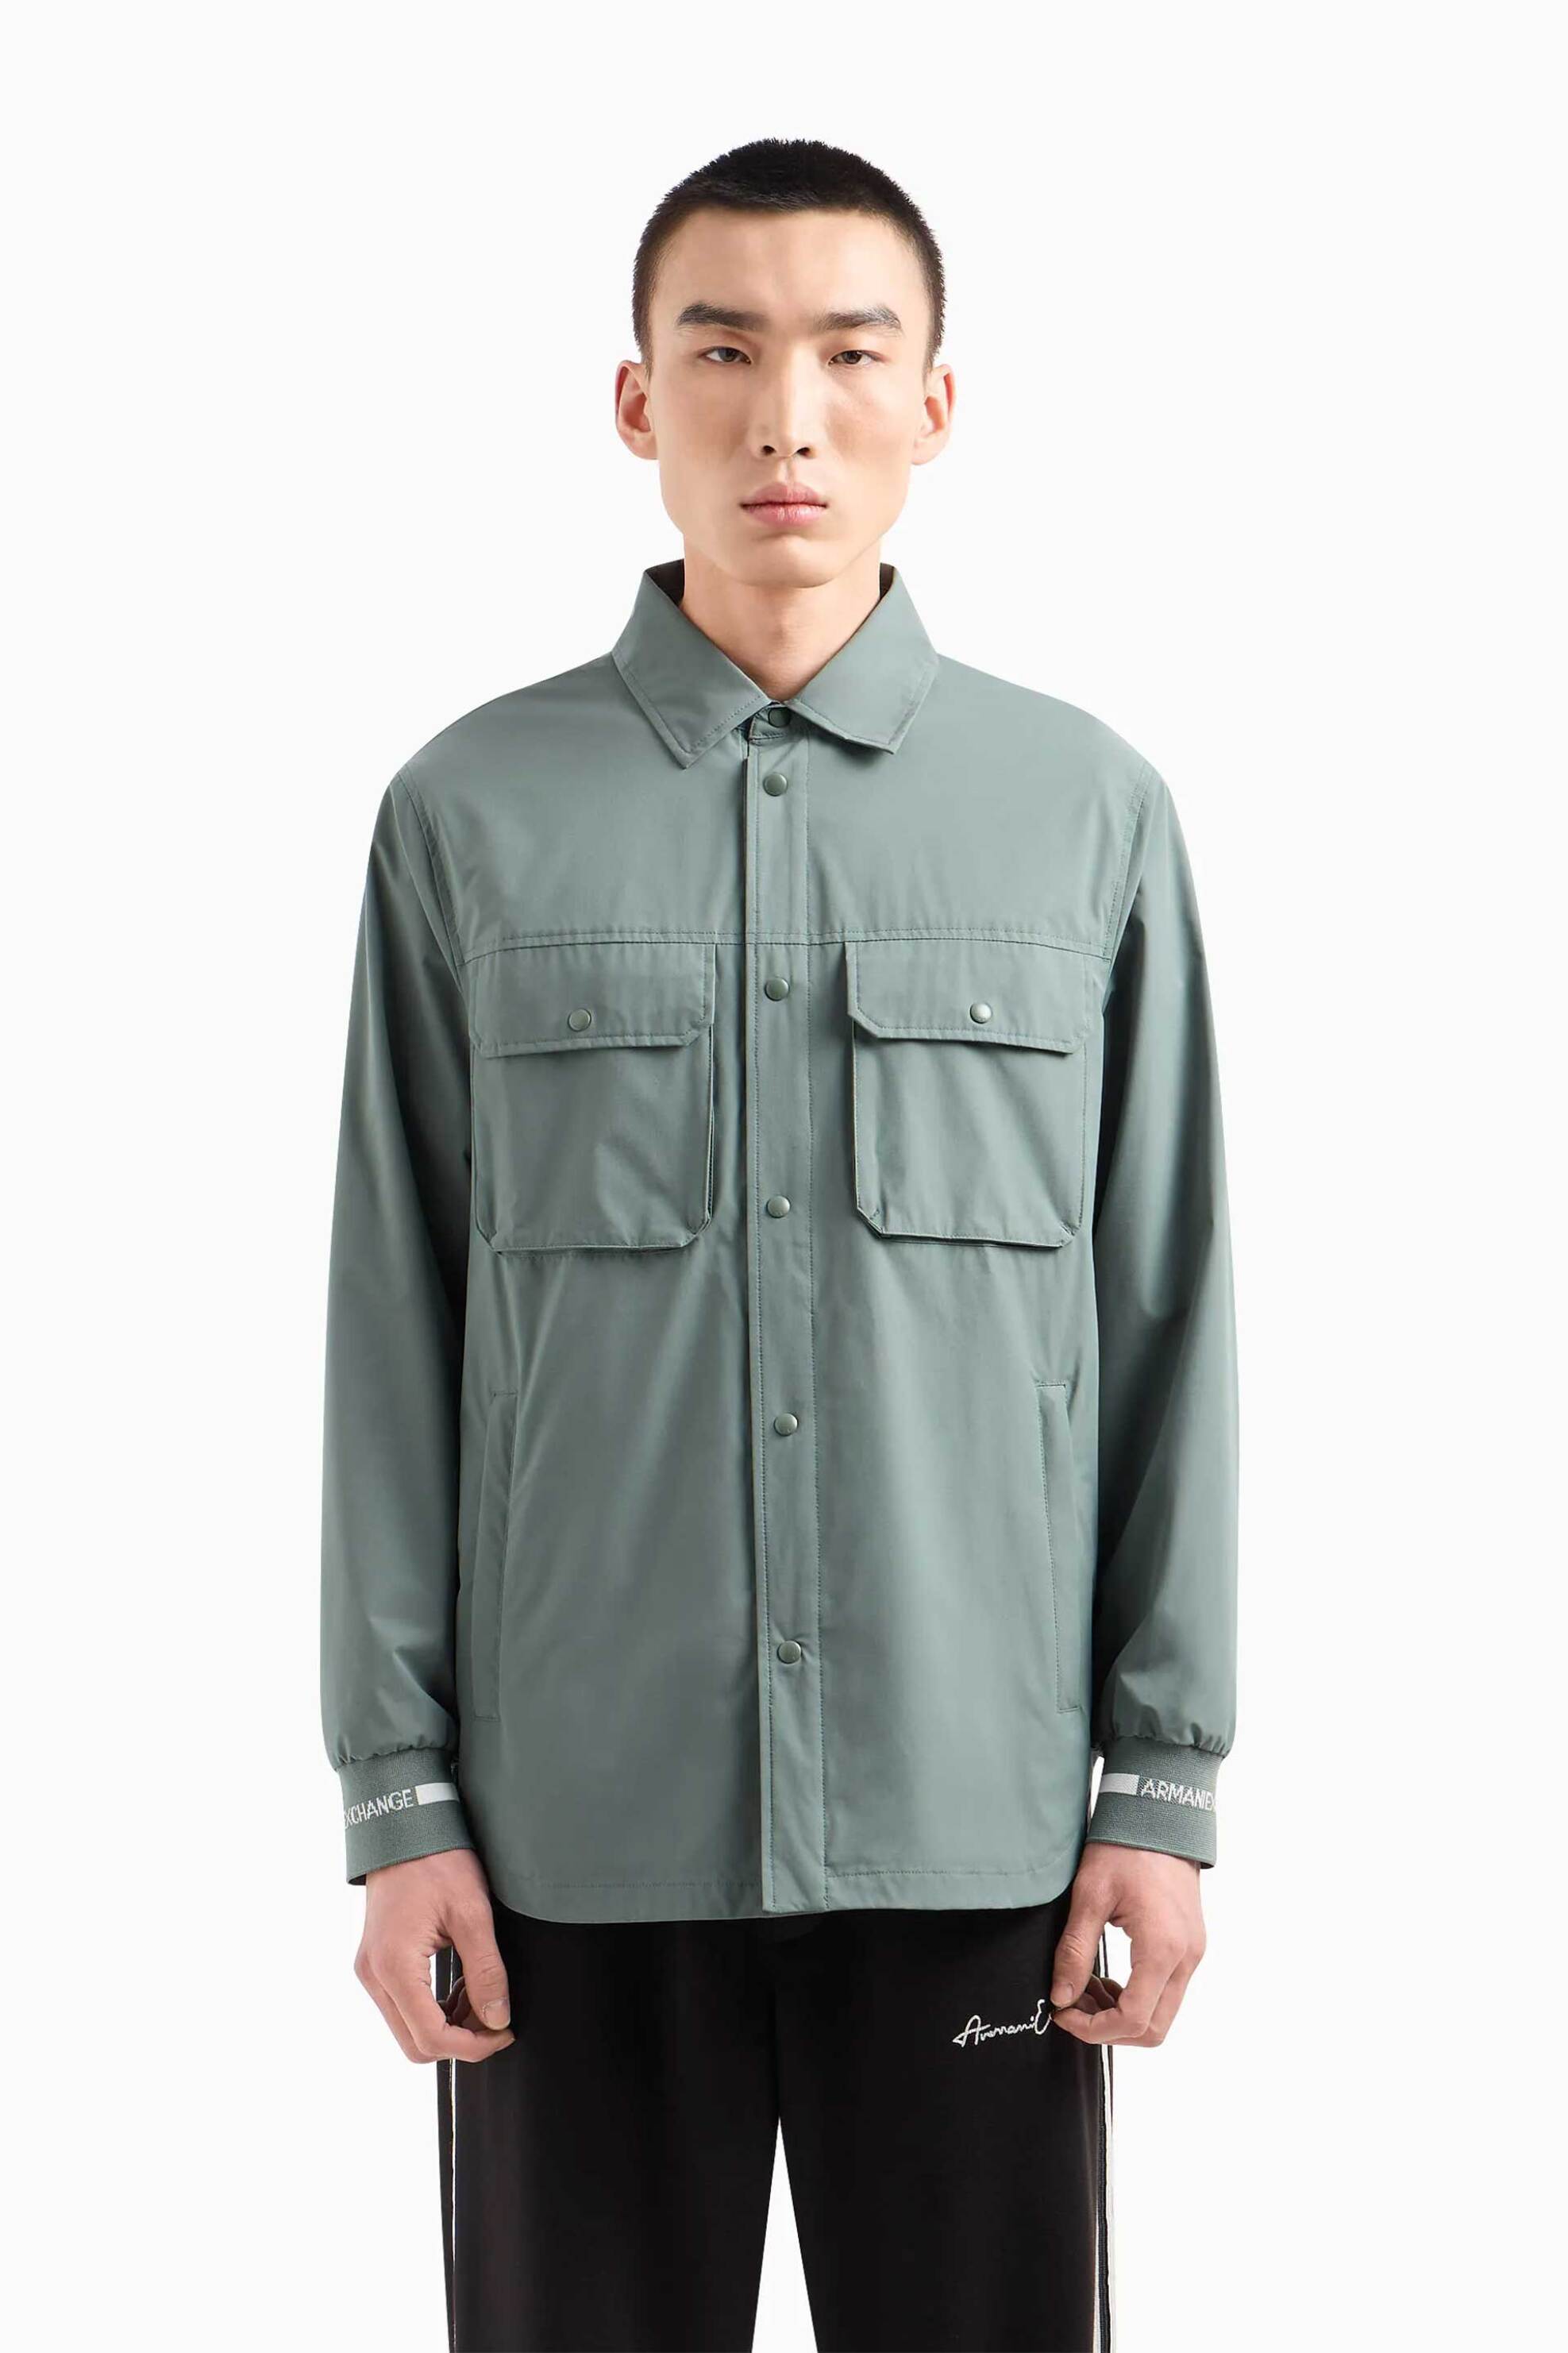 Ανδρική Μόδα > Ανδρικά Ρούχα > Ανδρικά Μπουφάν & Παλτό > Ανδρικά Μπουφάν Overshirts Armani Exchange ανδρικό overshirt με τσέπες Loose Fit - 3DZCL7ZN3FZ Πράσινο Μέντας